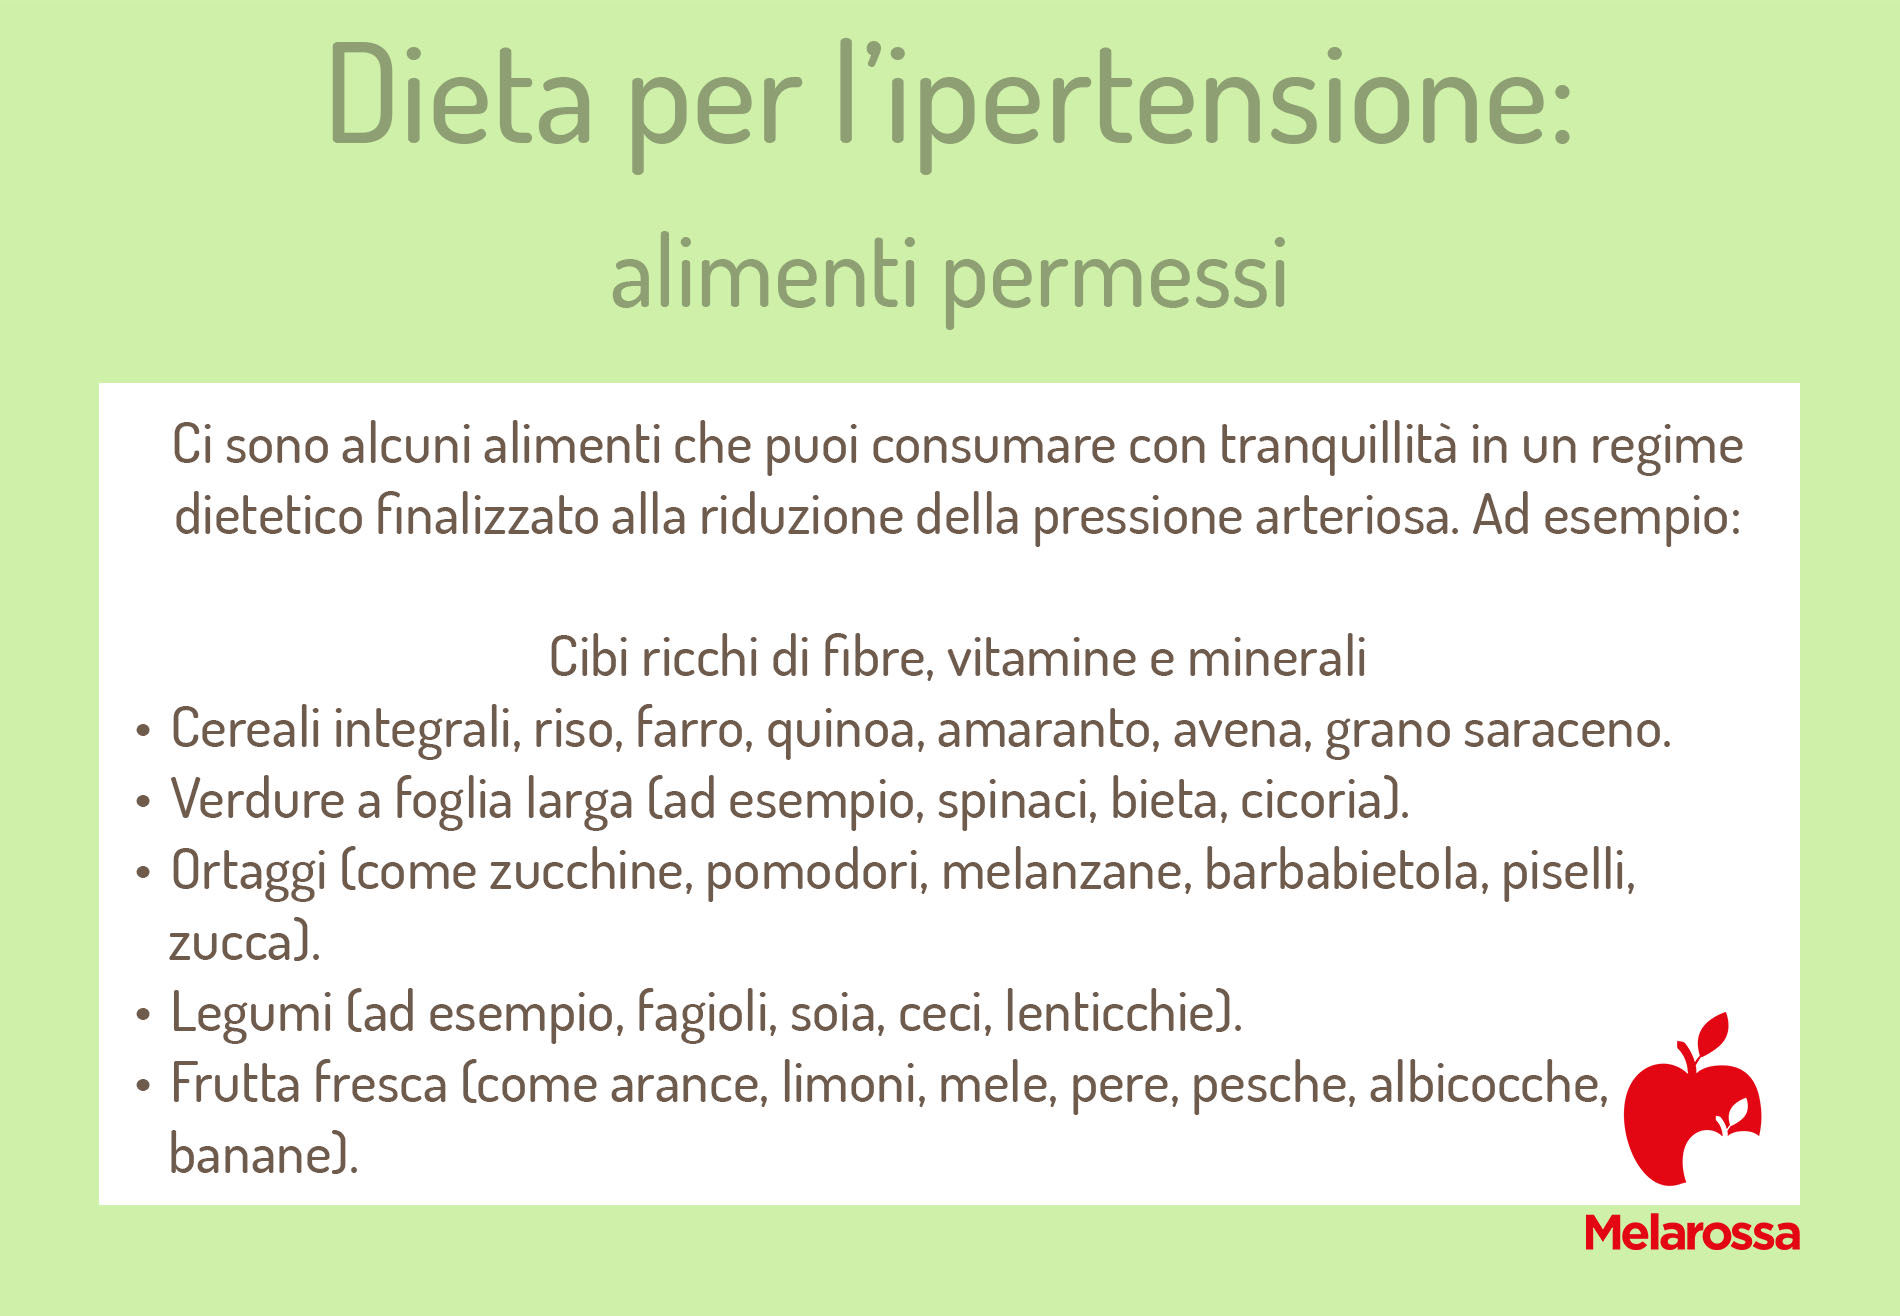 dieta per ipertensione: alimenti permessi